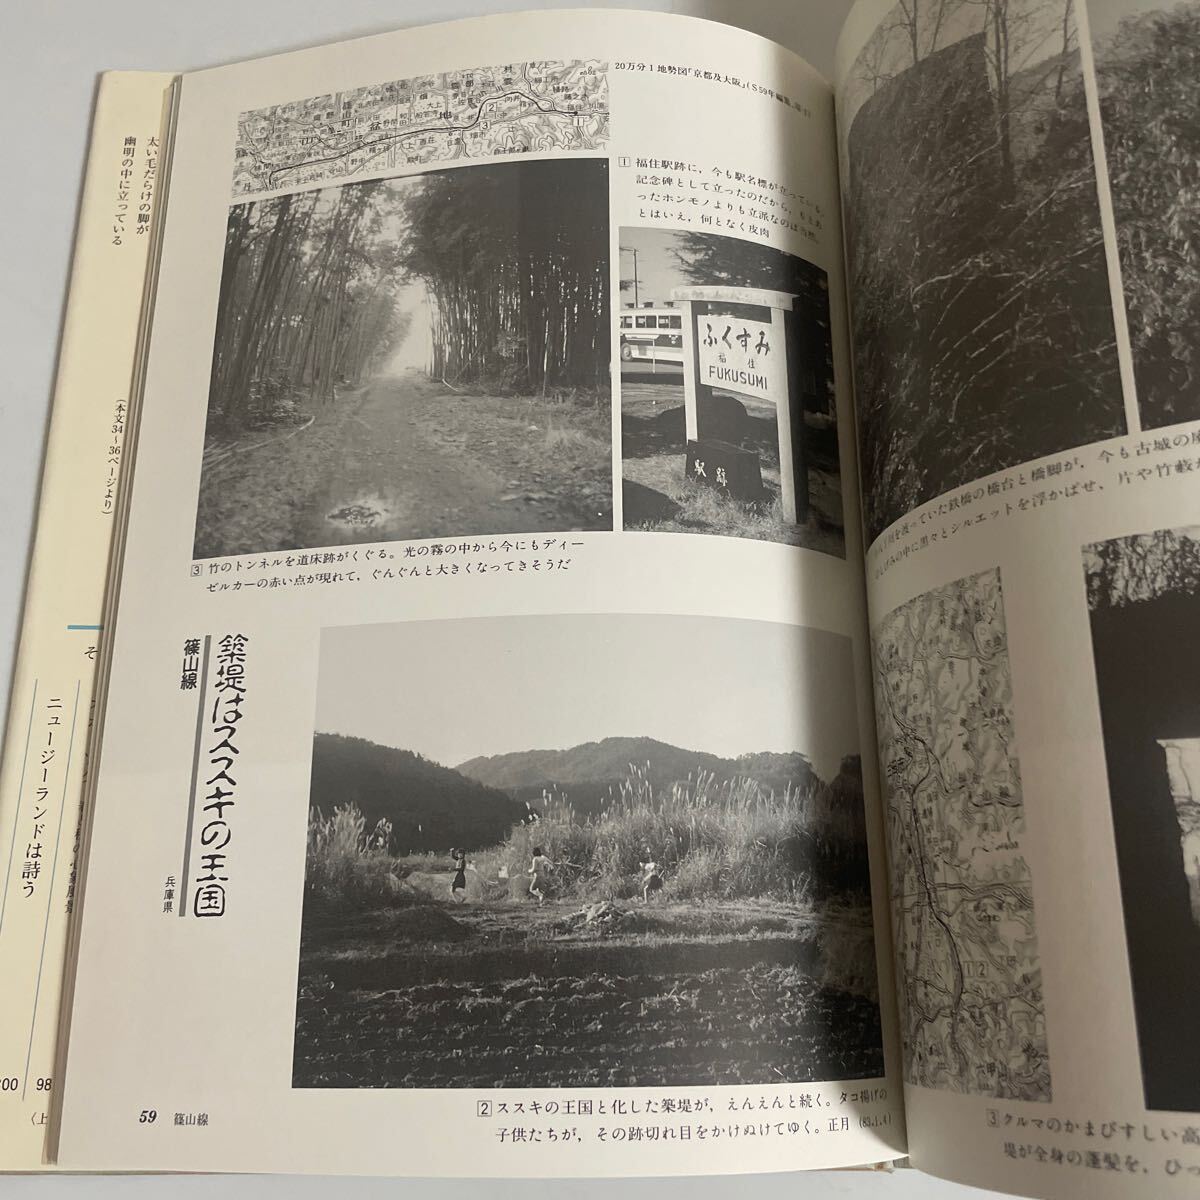 れいる残照 著・堀淳一 (株)そしえて 1989年発行 鉄道資料の画像10